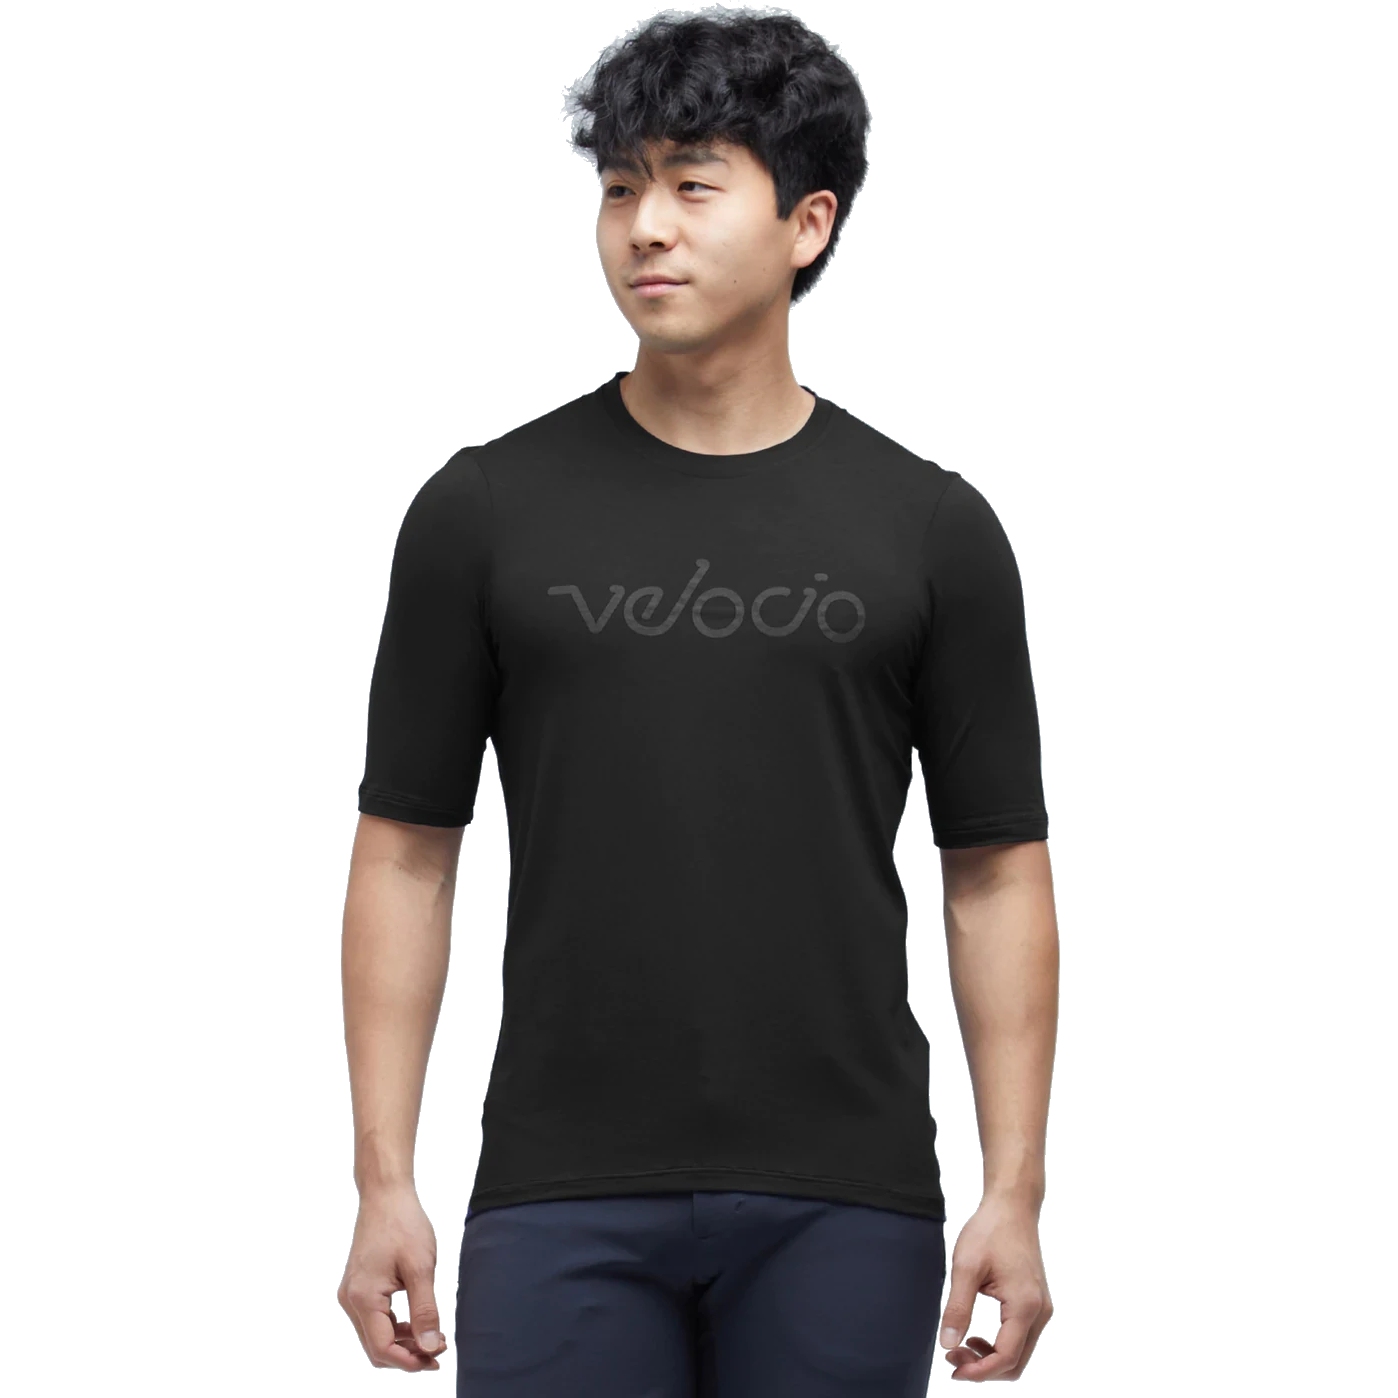 Produktbild von Velocio Modal Herren T-Shirt - Charcoal